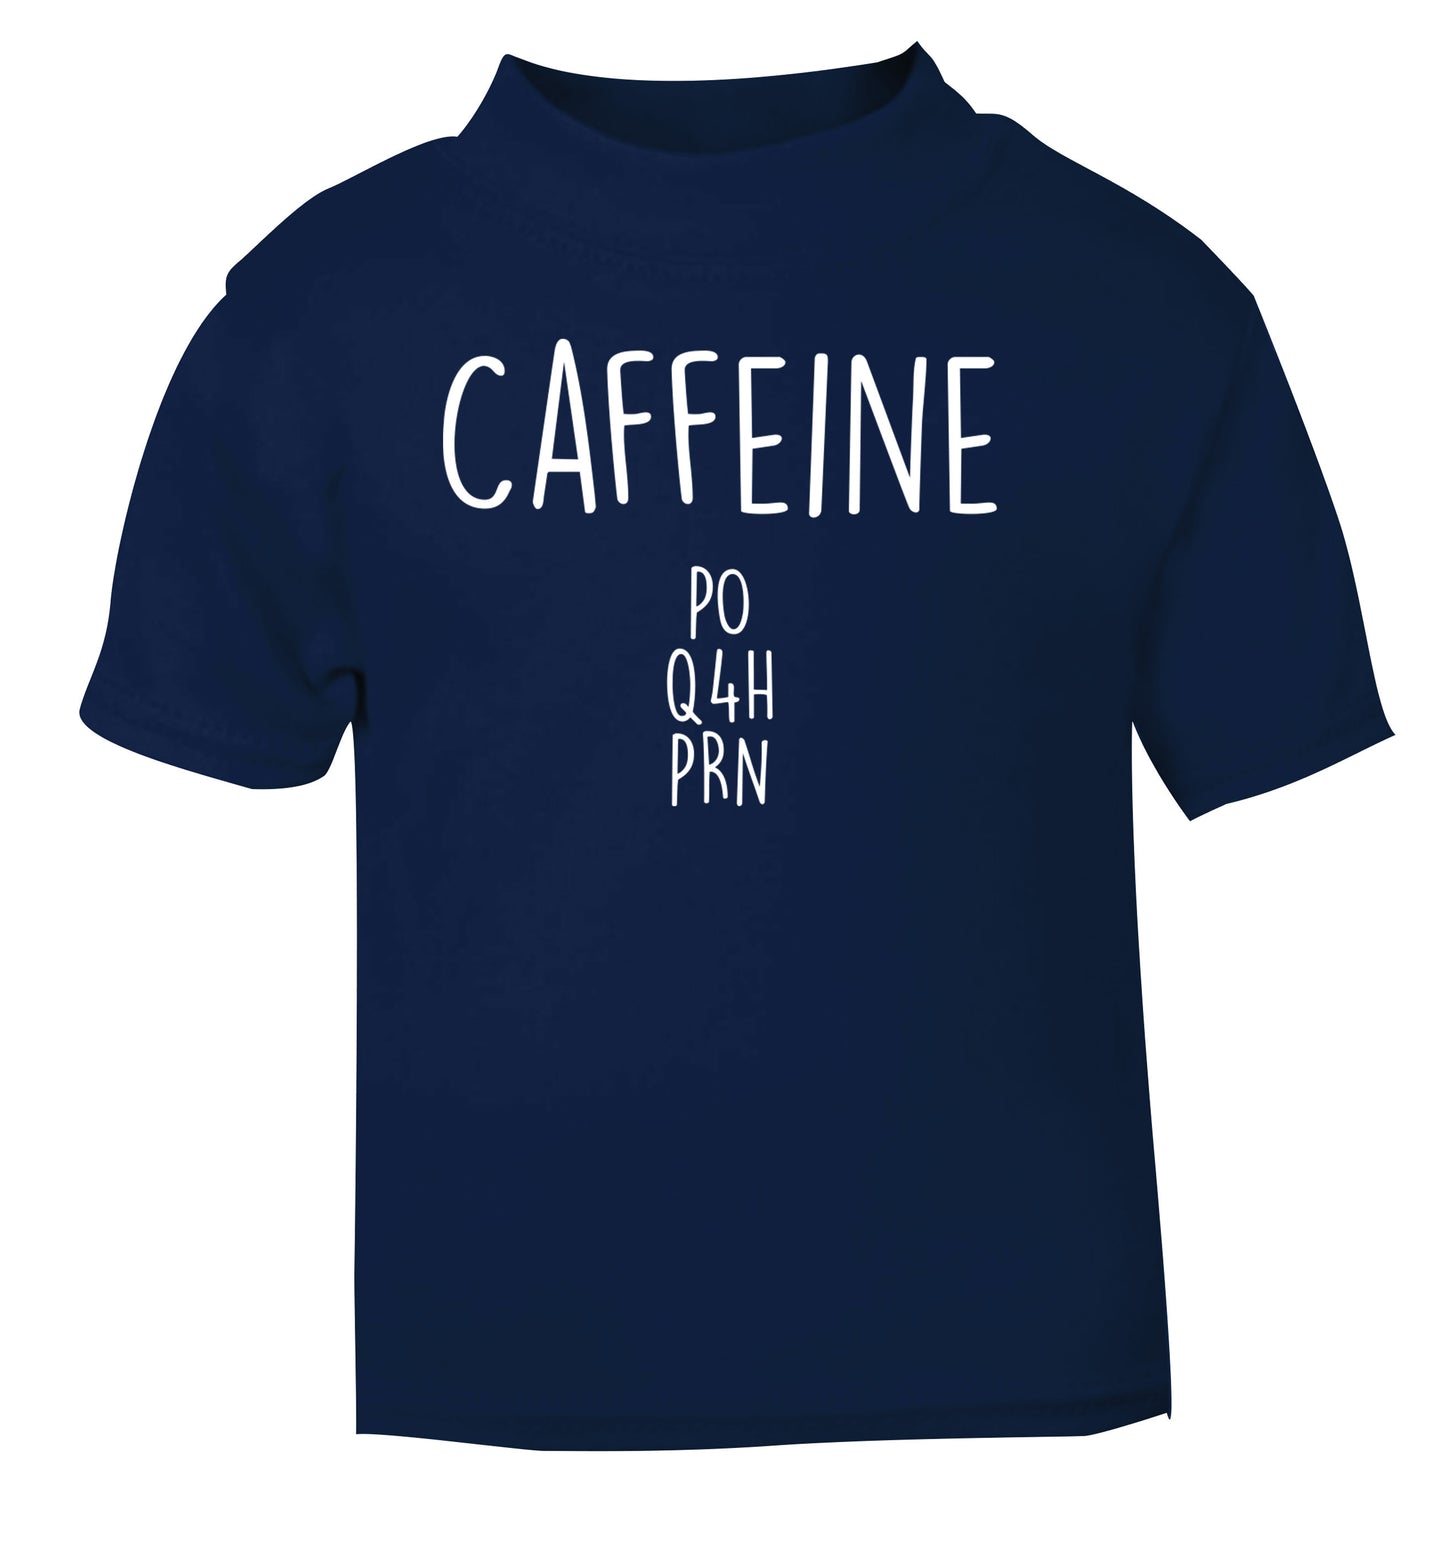 Caffeine PO Q4H PRN navy Baby Toddler Tshirt 2 Years